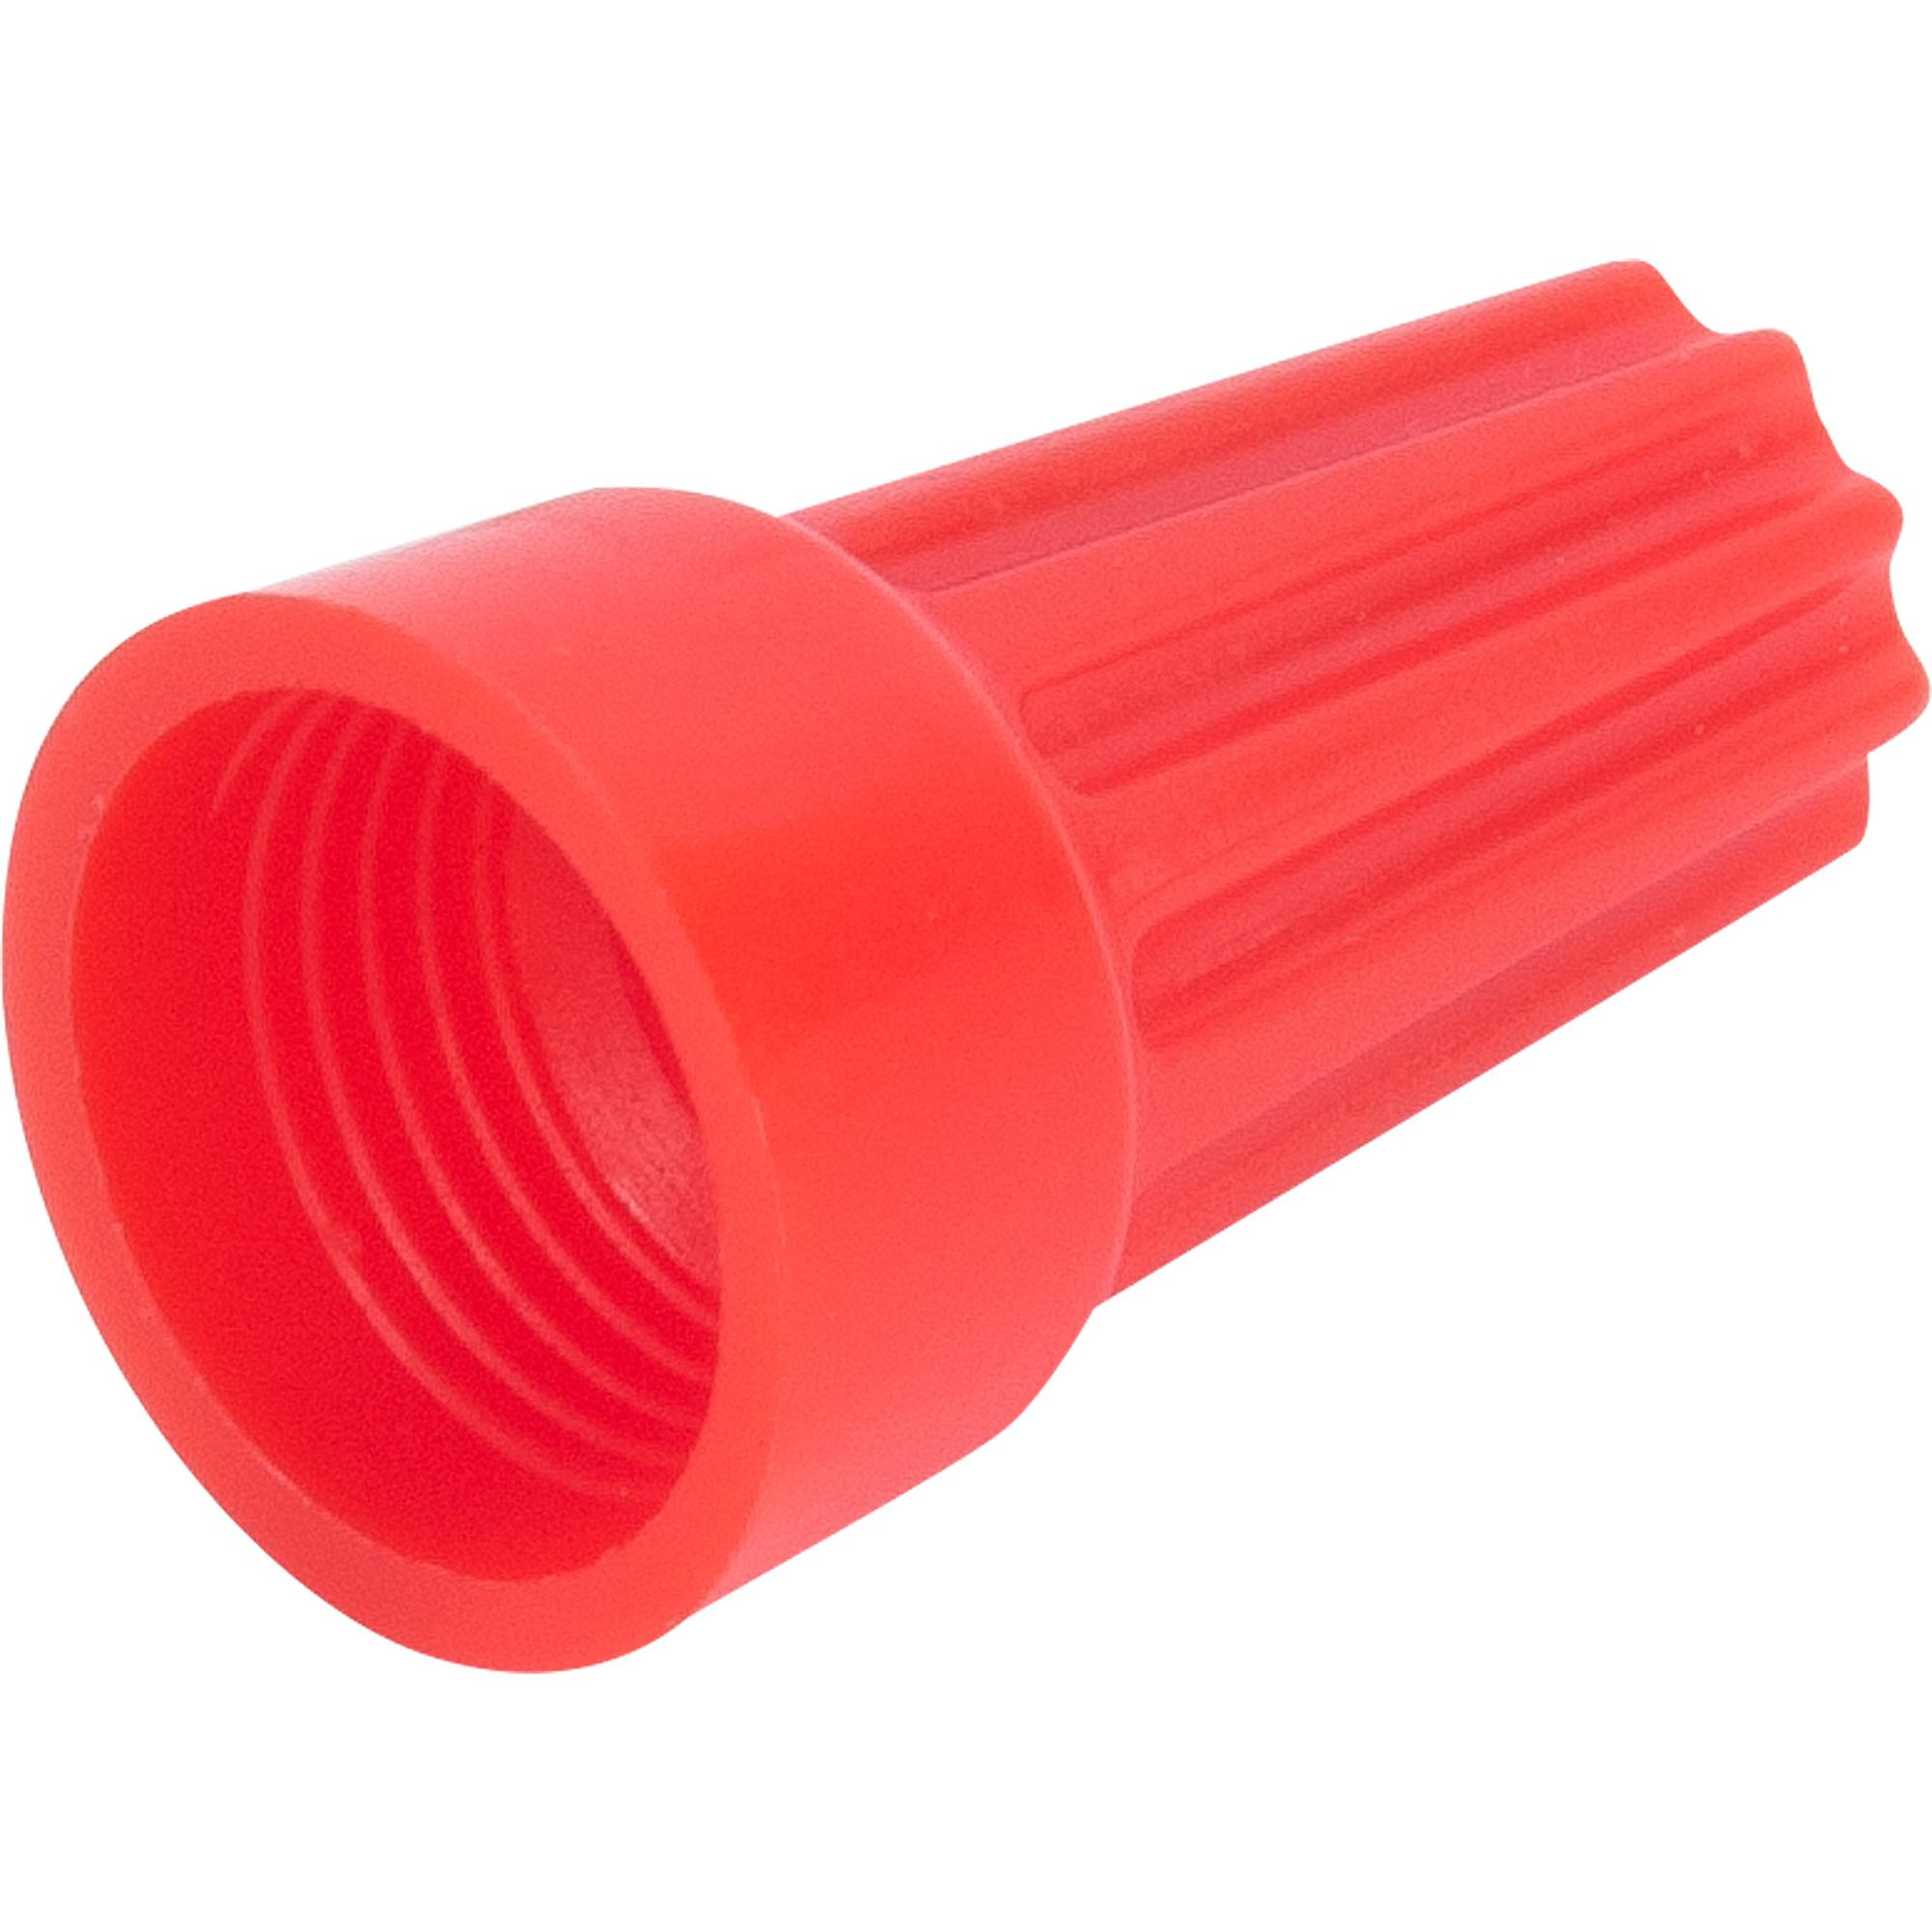  изолирующий зажим Duwi СИЗ-5 4.5-14 мм цвет красный 10 .